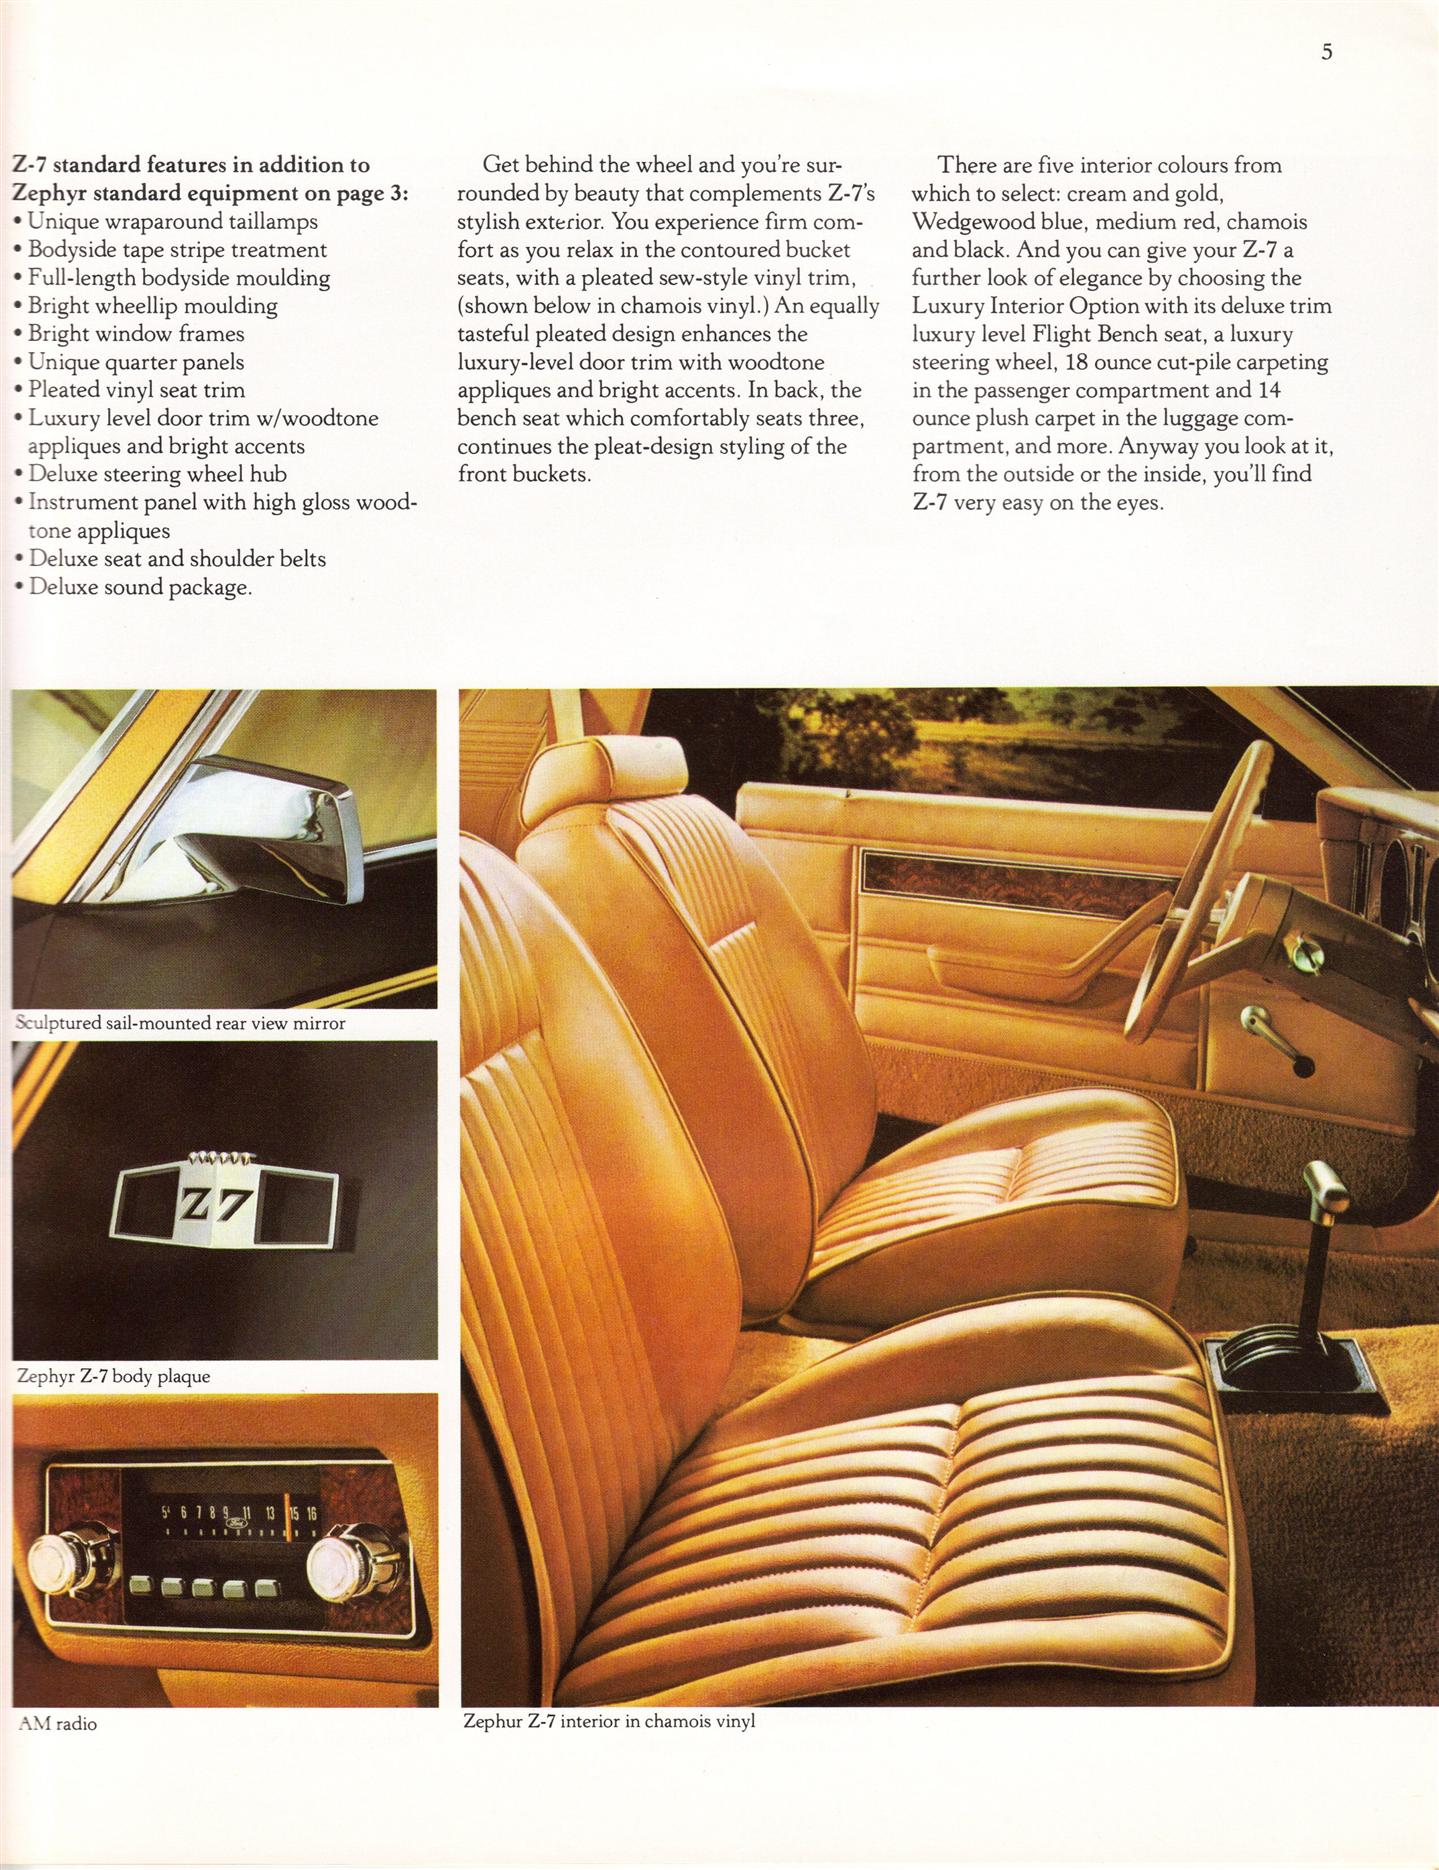 1979 Mercury Zephyr Brochure Page 9